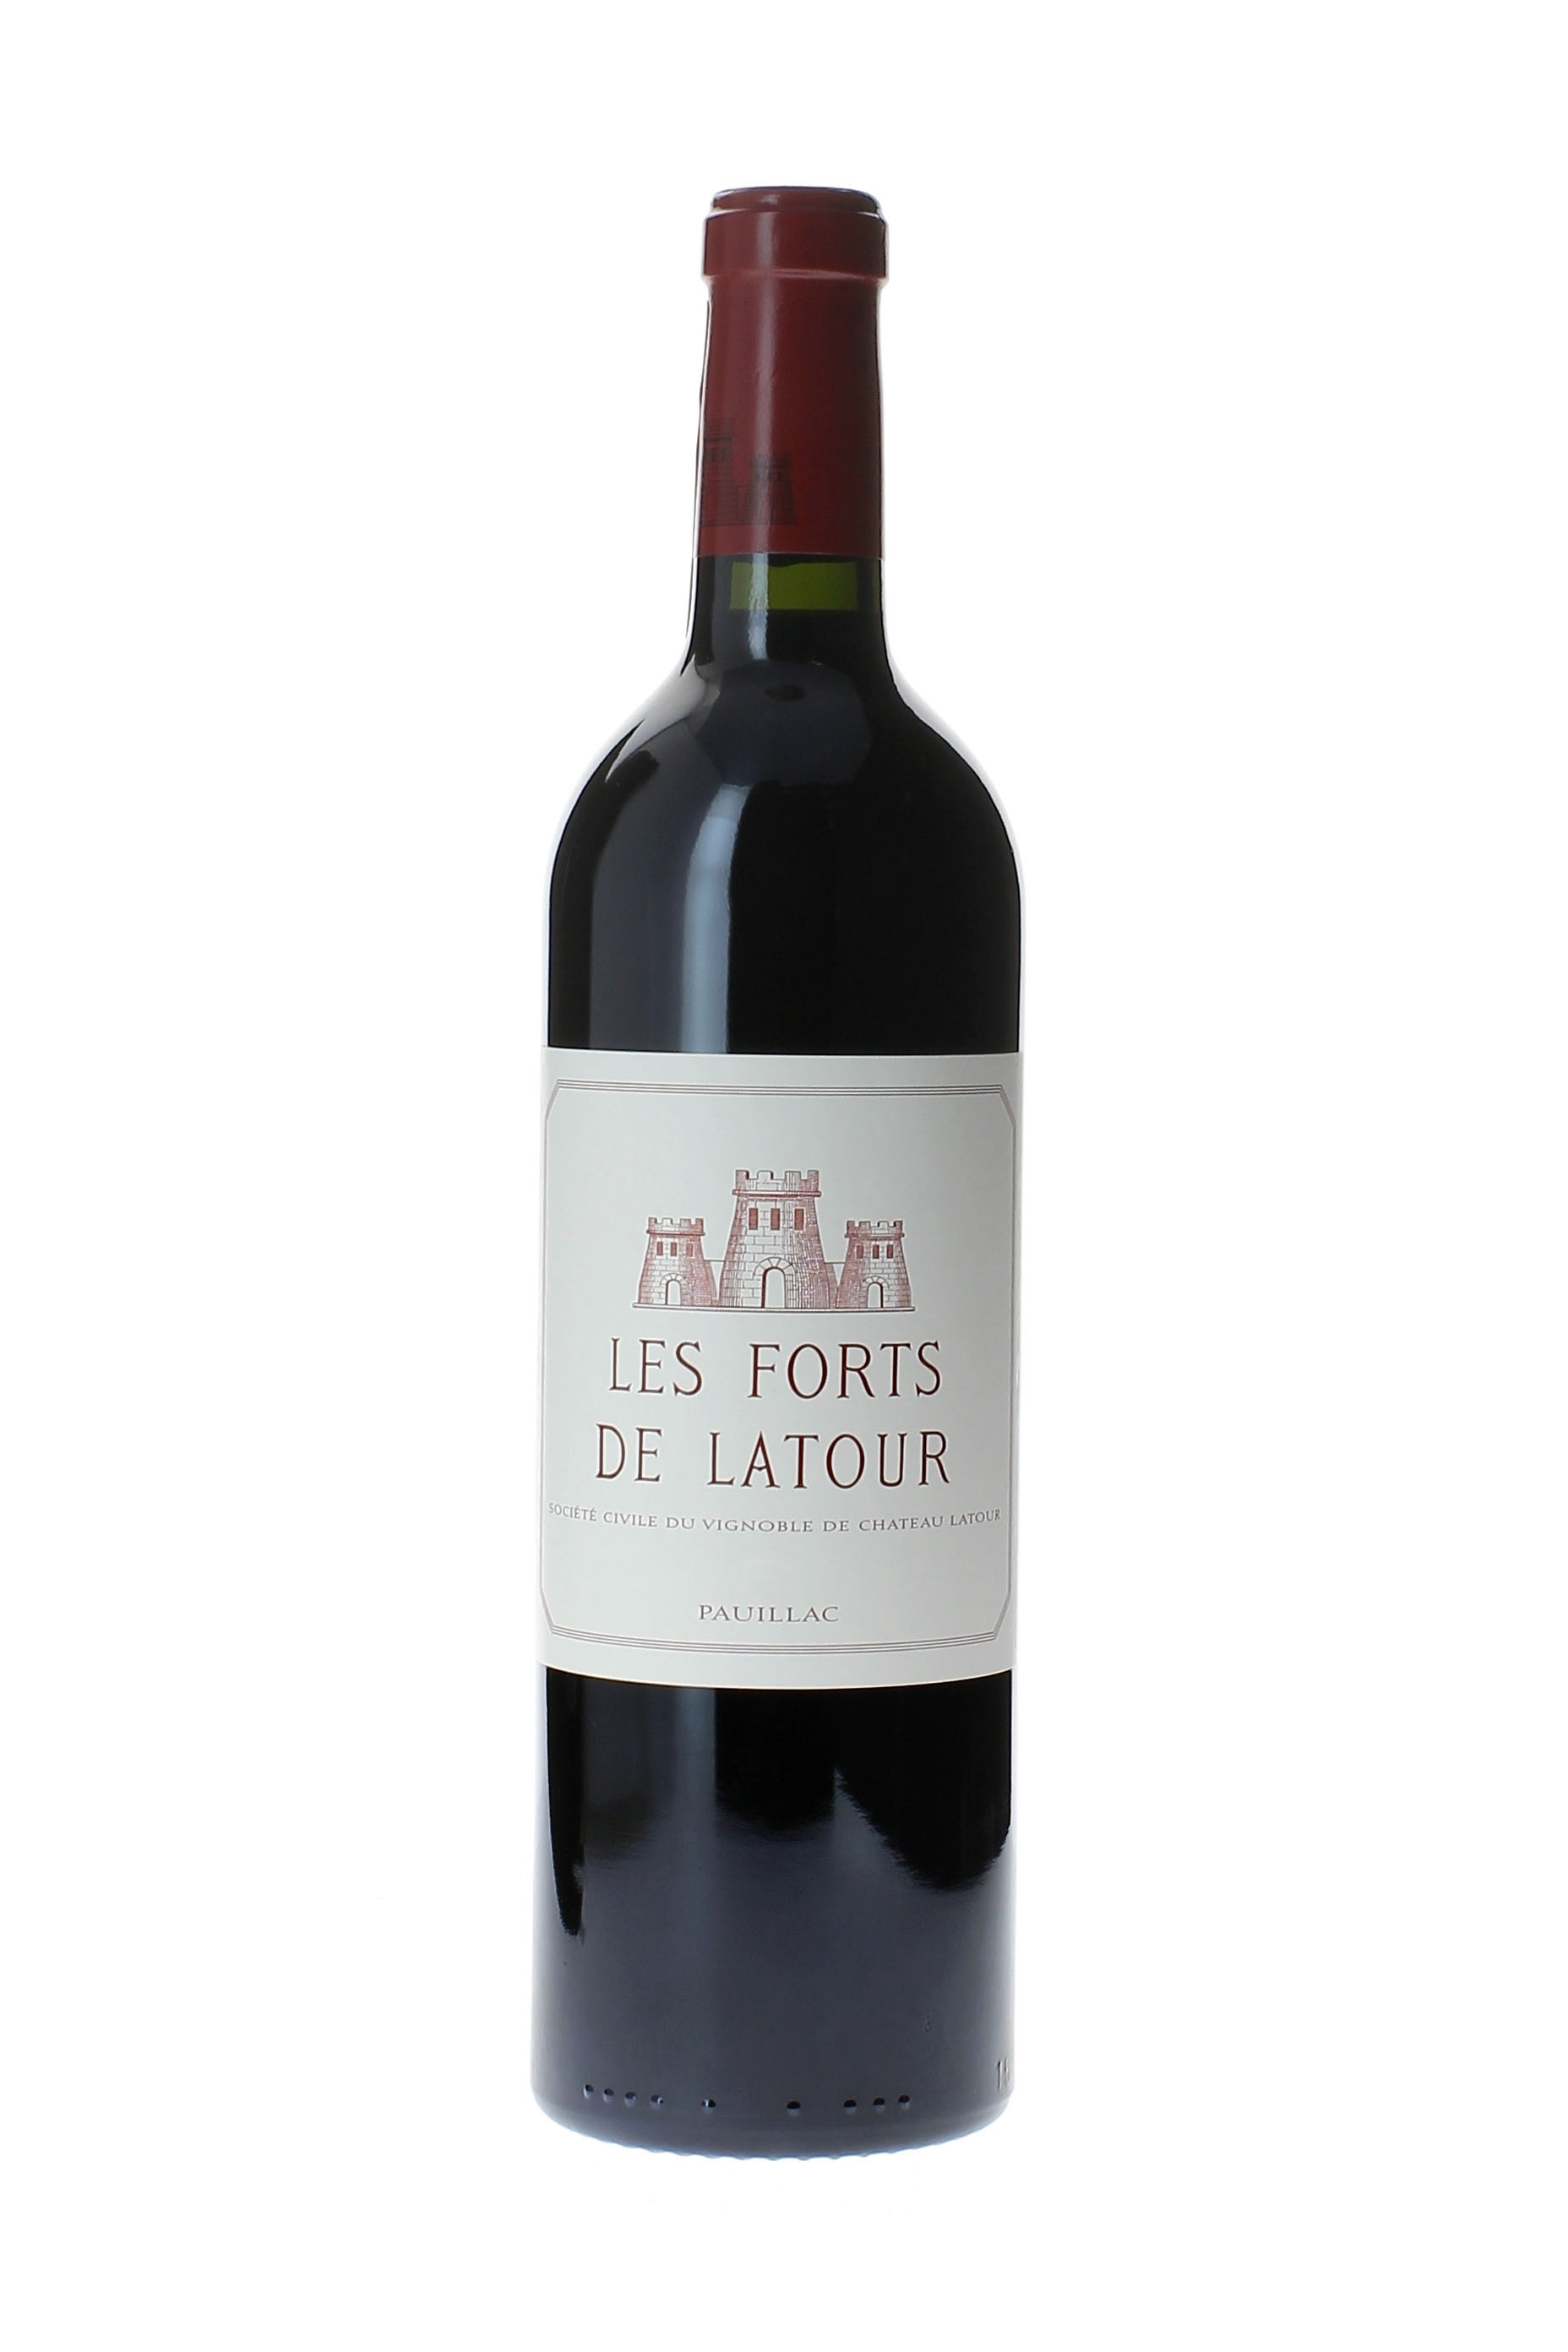 Forts de latour 2011 2me vin de LATOUR Pauillac, Bordeaux rouge